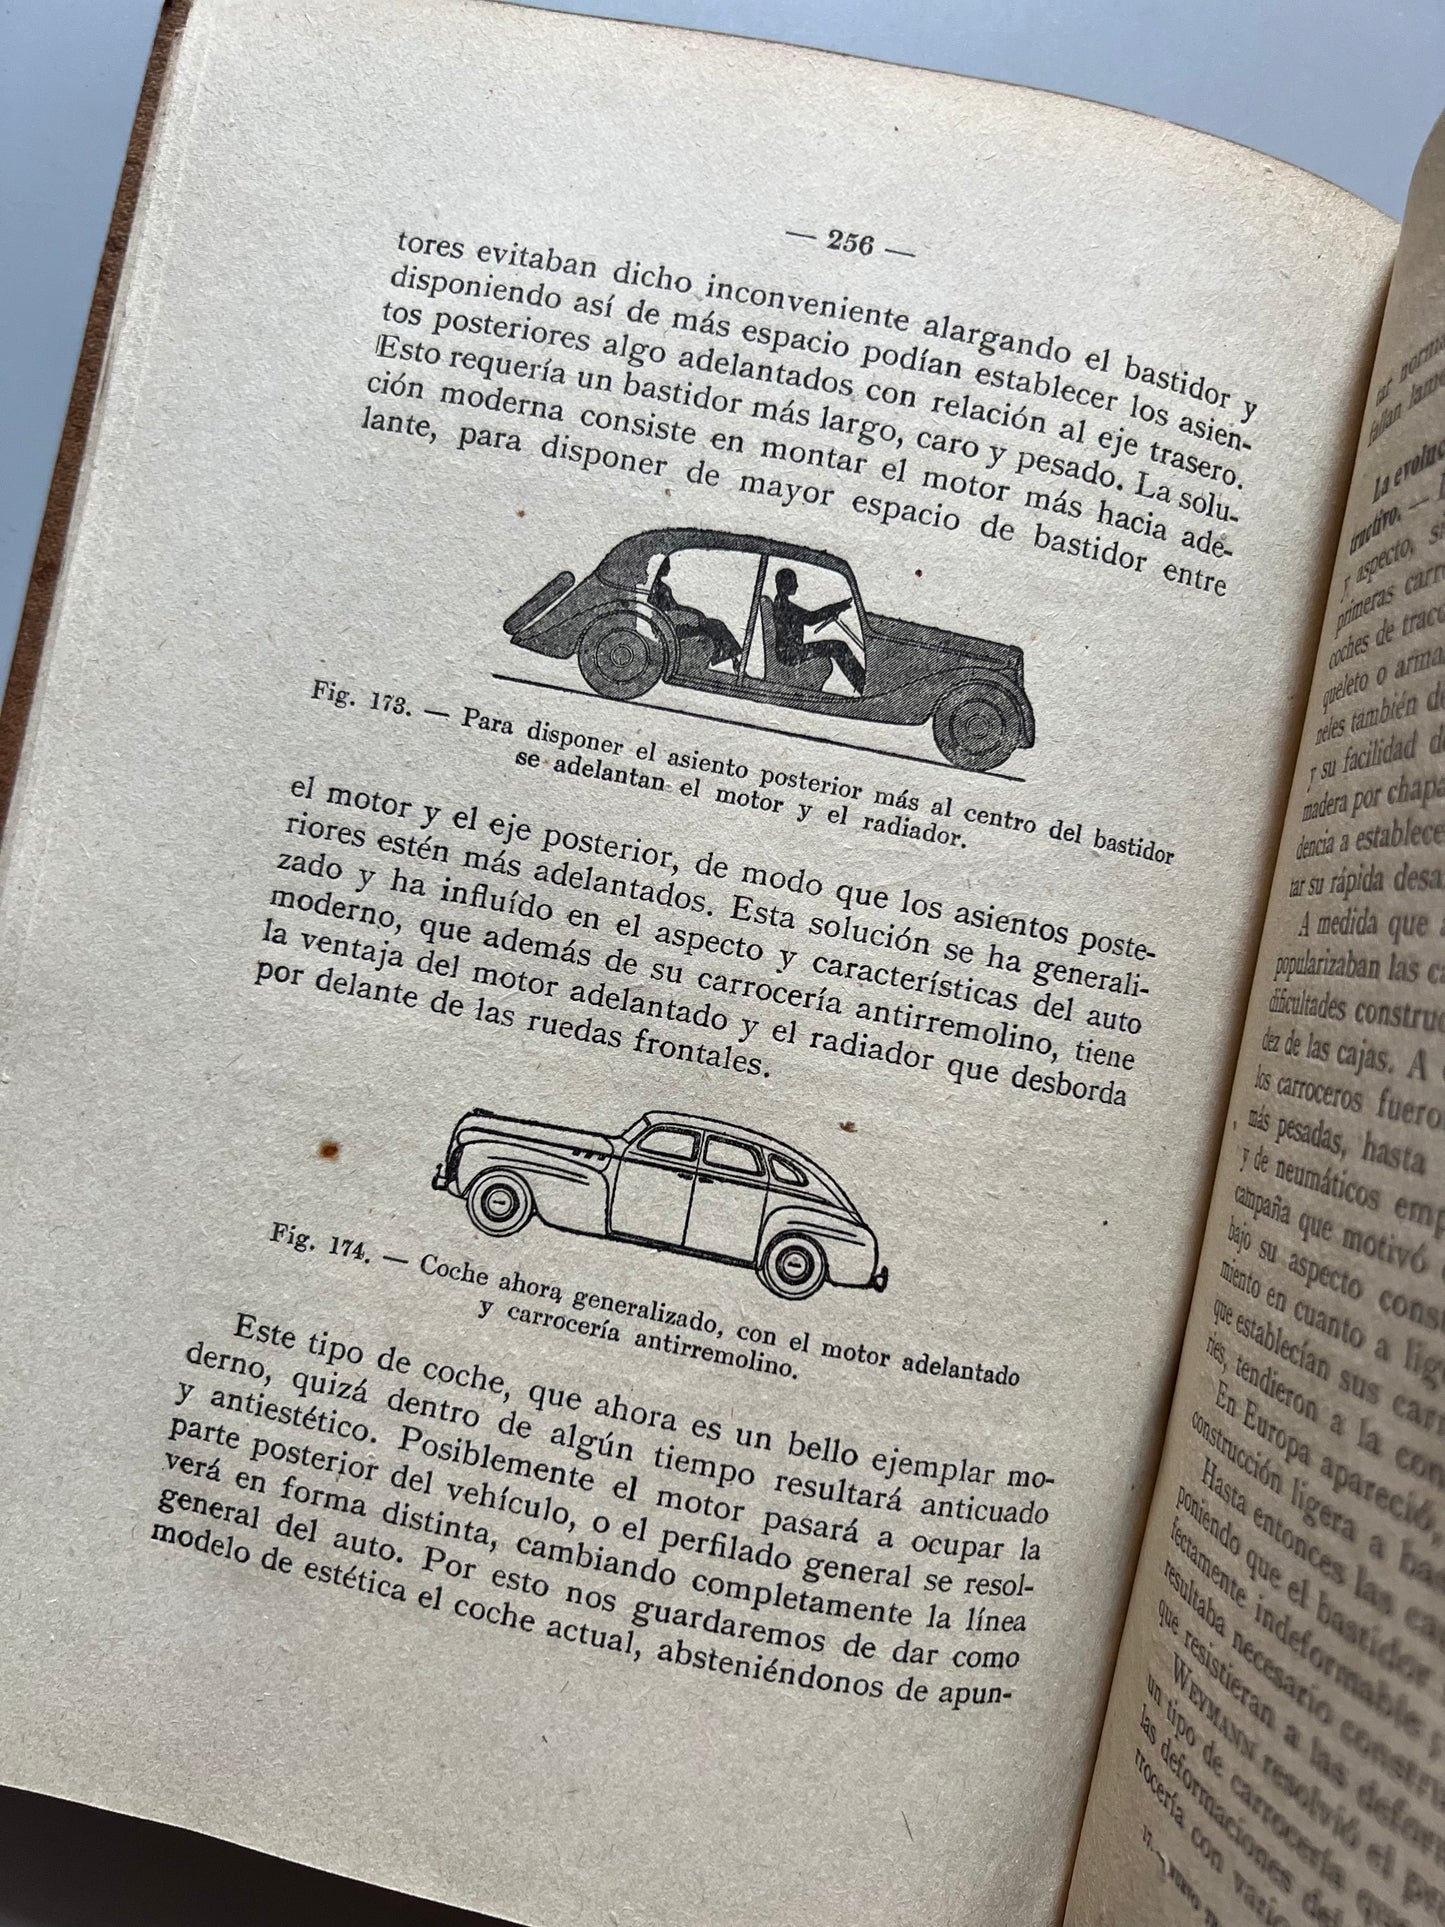 Nuevo tratado del automóvil moderno, Charles H. Curtis - Antonio Roch editor, ca. 1955